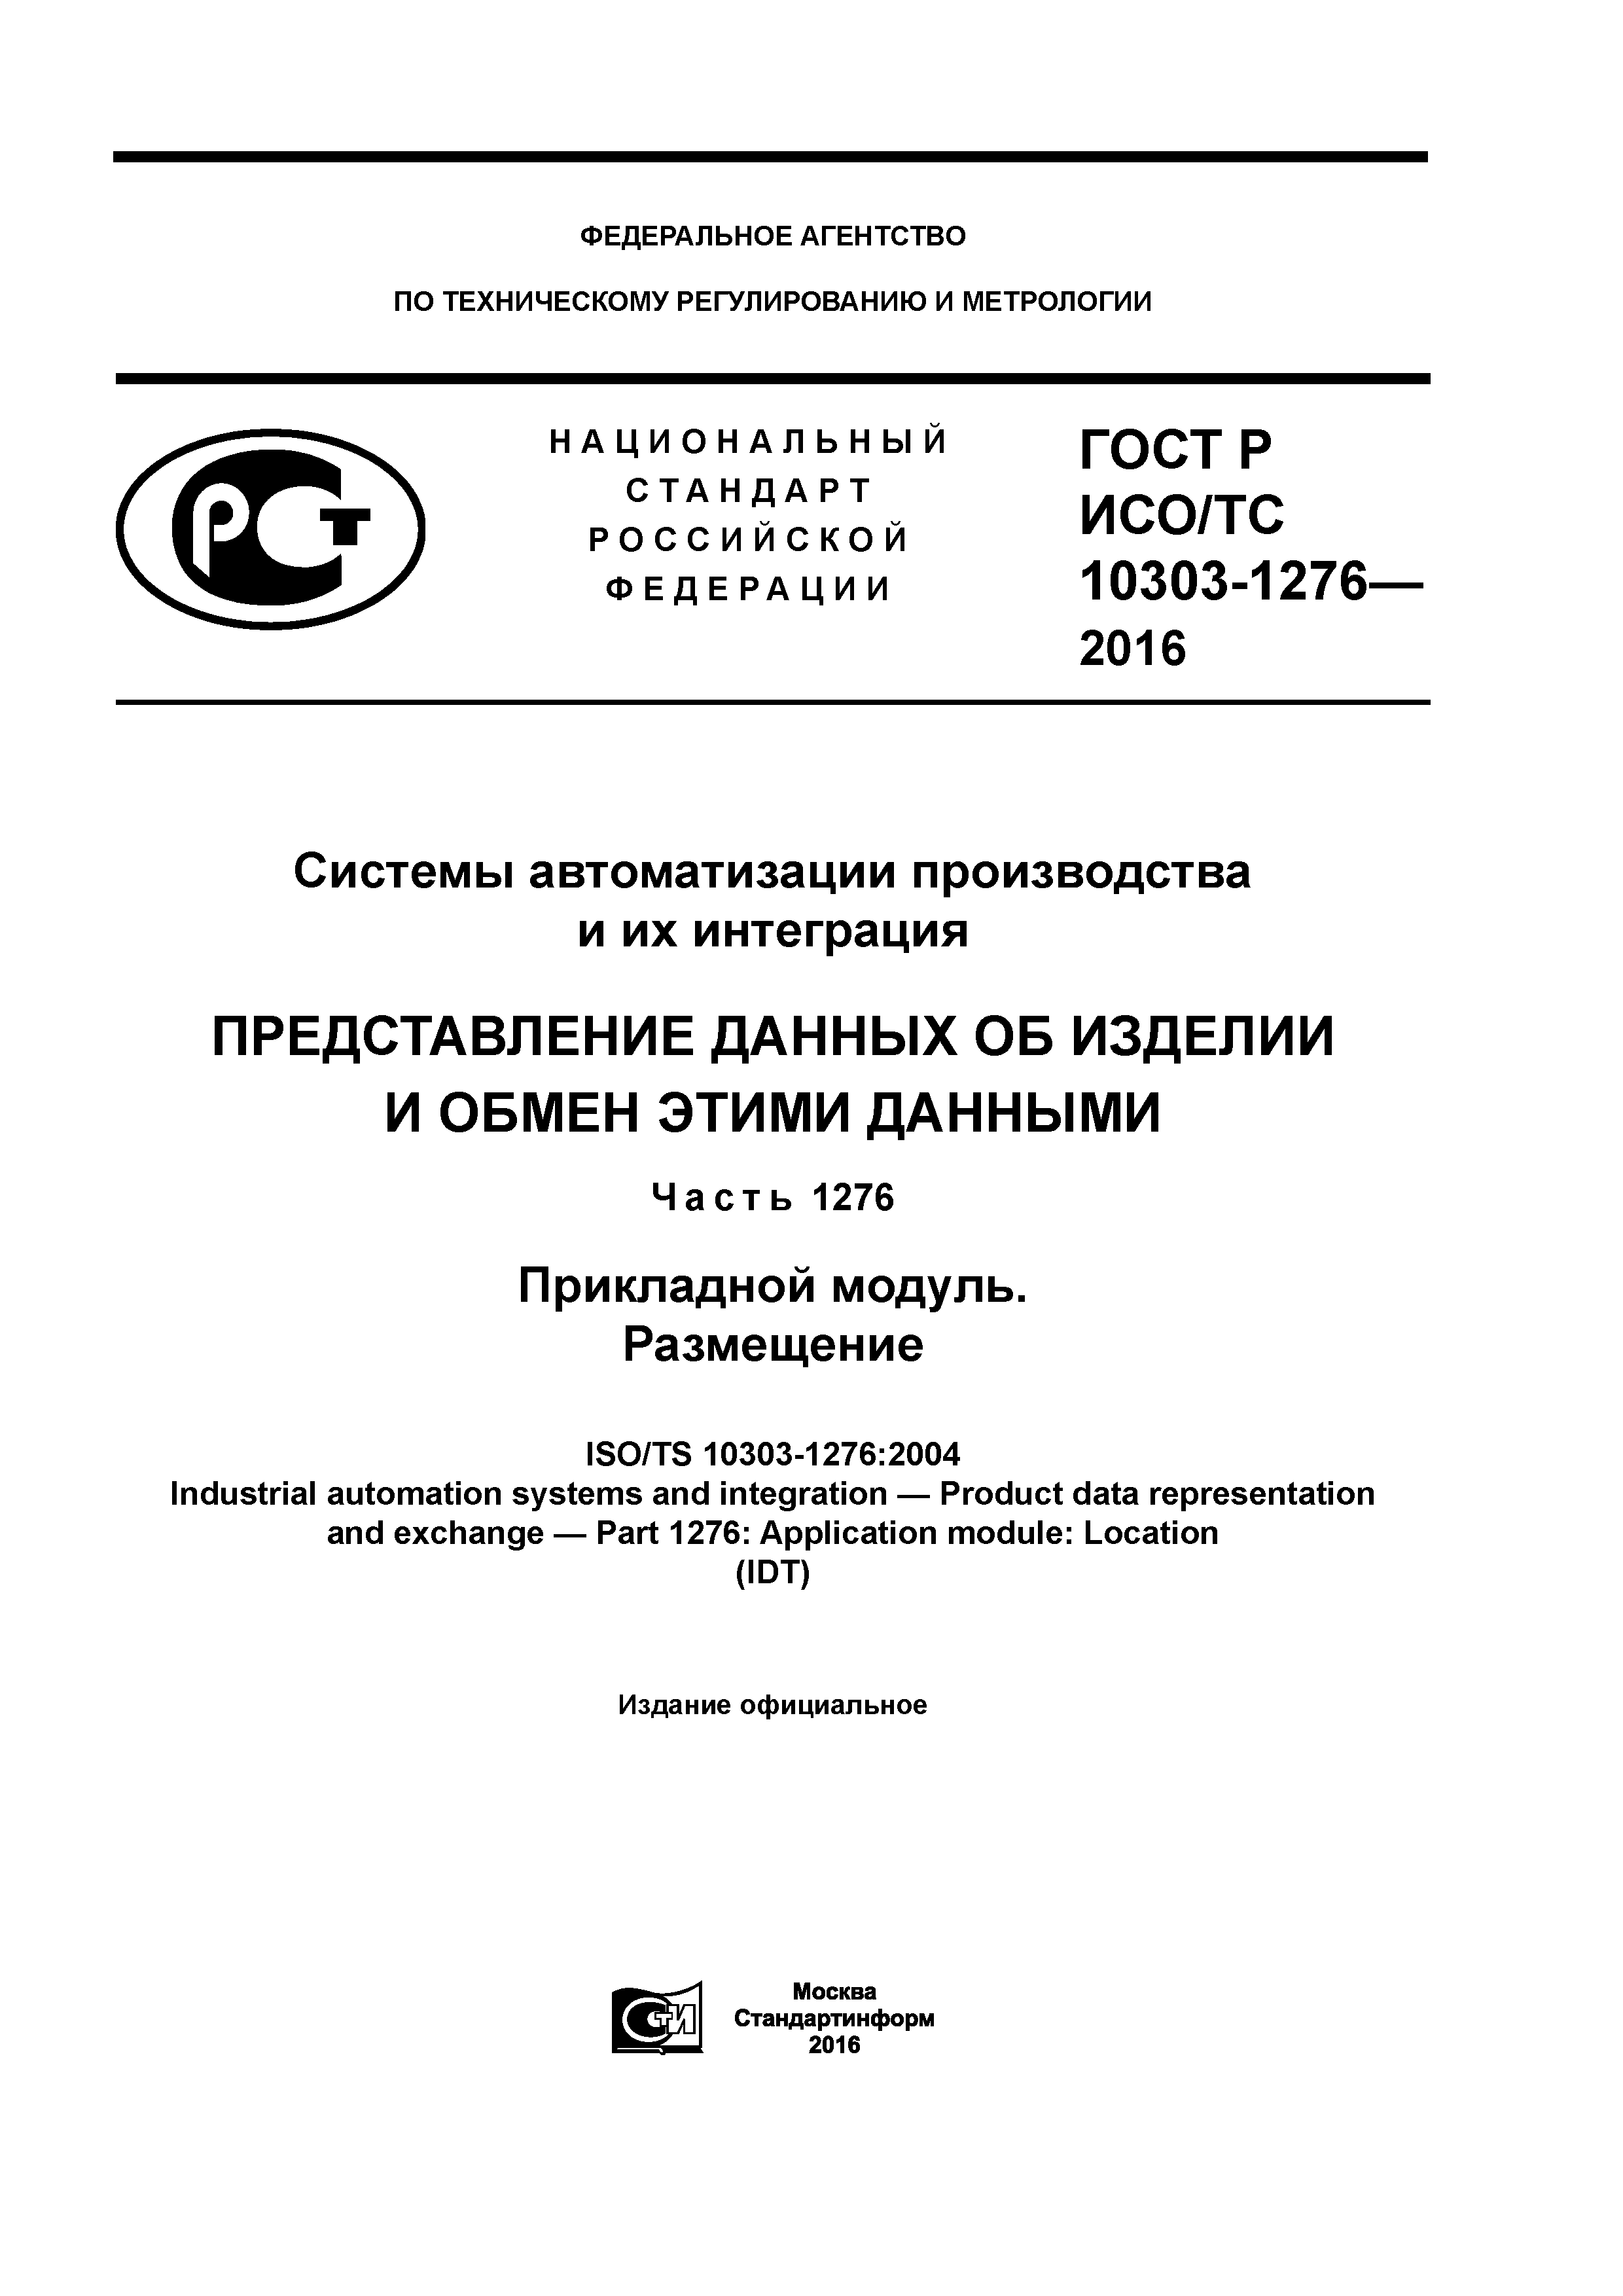 ГОСТ Р ИСО/ТС 10303-1276-2016